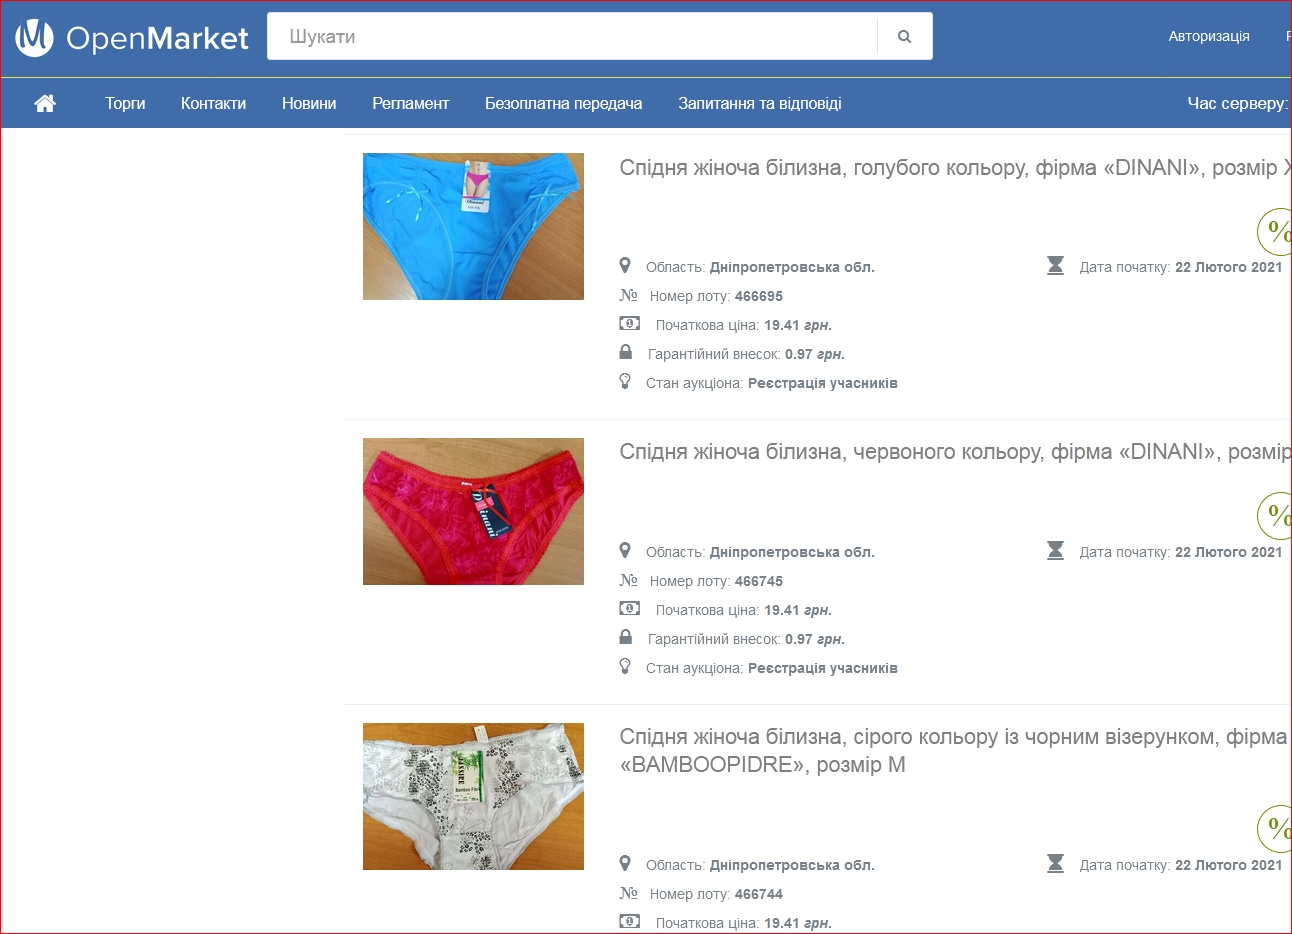 ”Все по 19,41 грн”: Минюст продает на аукционе арестованы женские трусики - фото 3